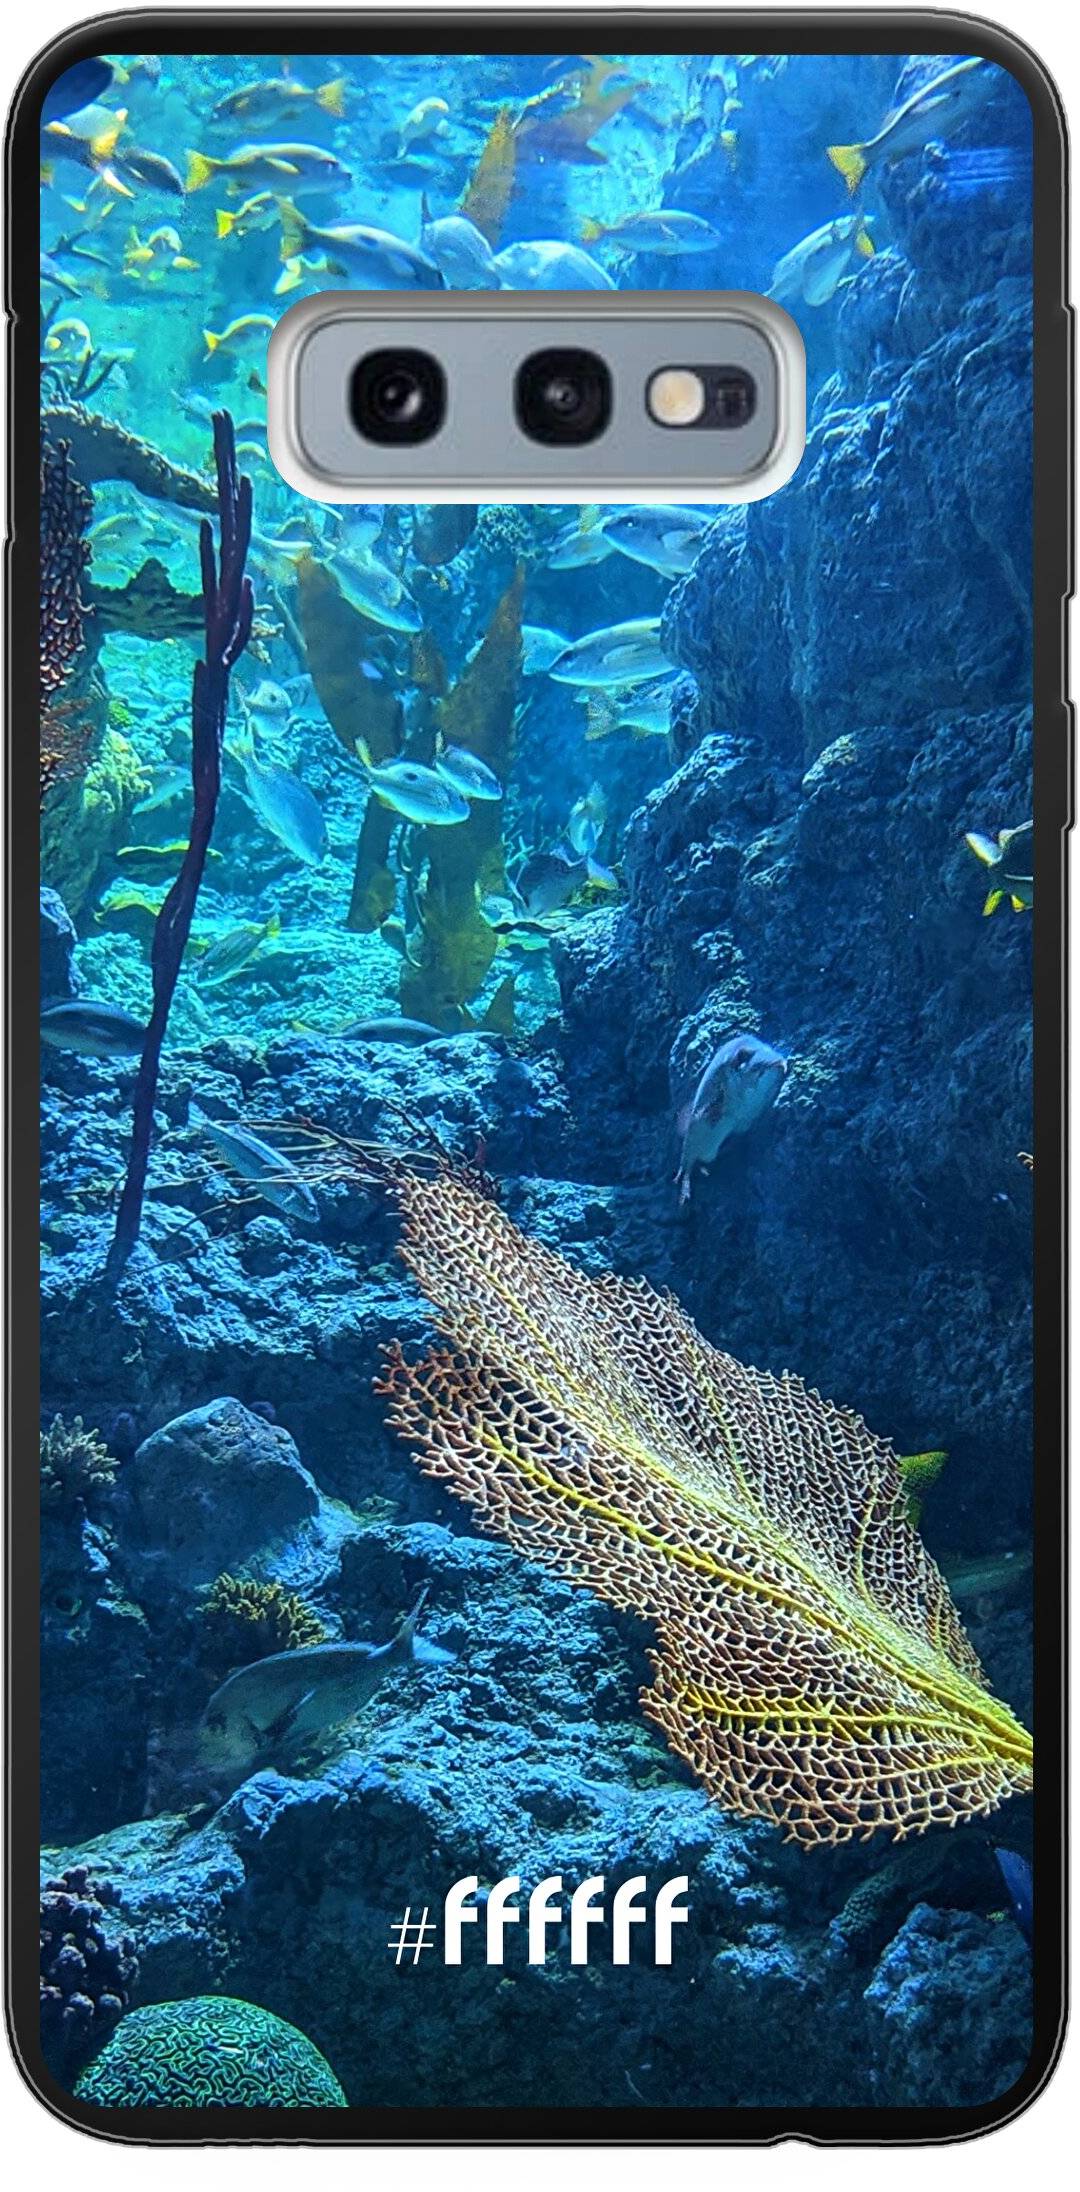 Coral Reef Galaxy S10e